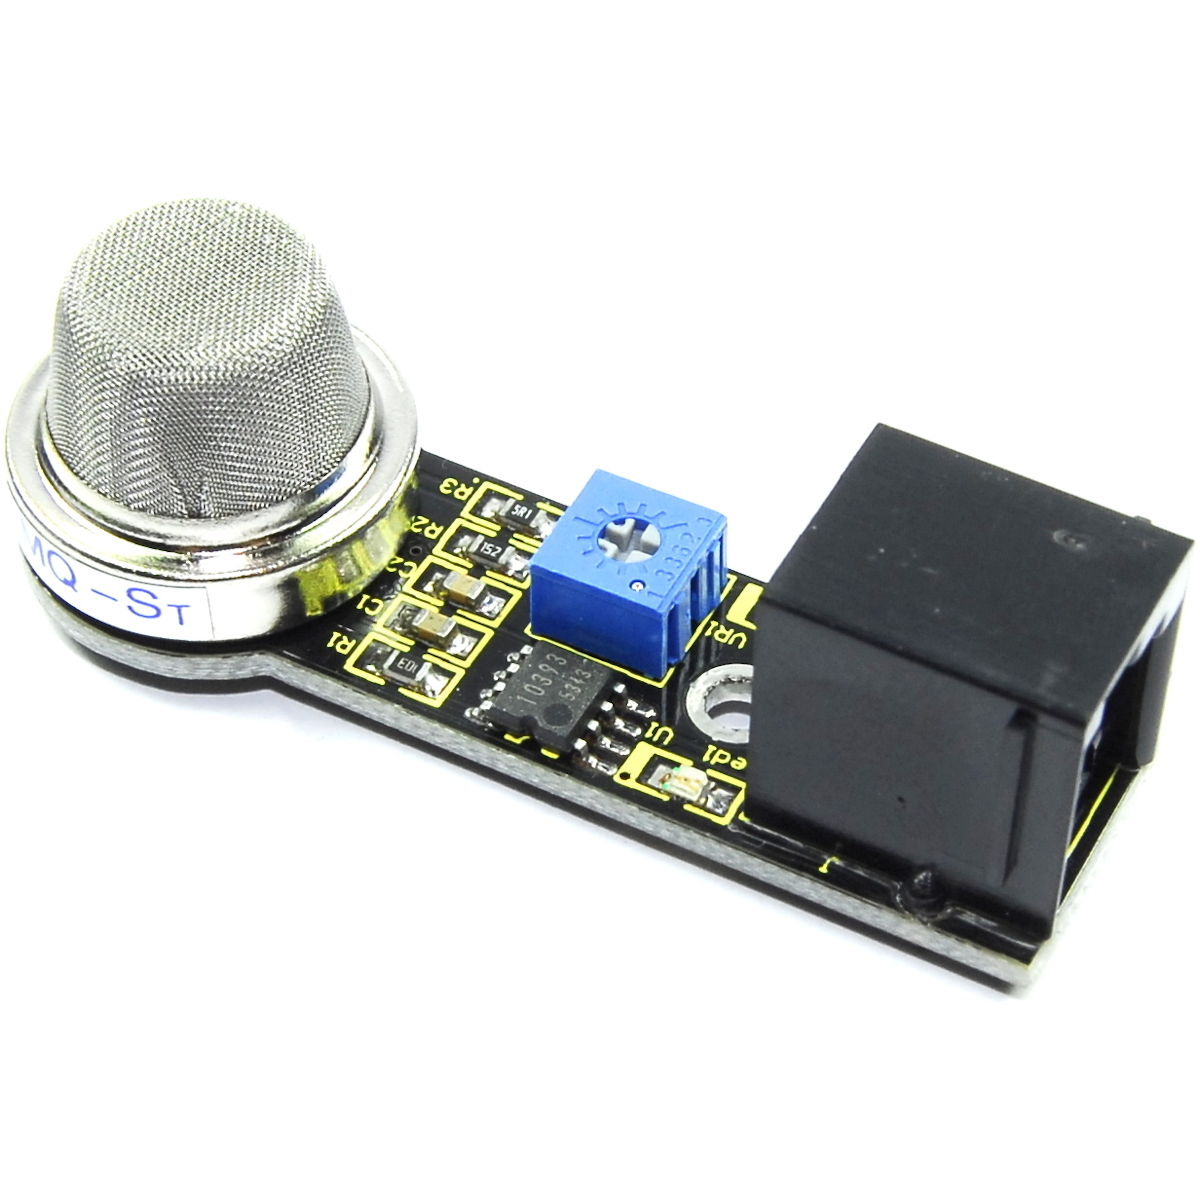 EASY-plug MQ-135 Air Quality Sensor Keyestudio Black Image 1